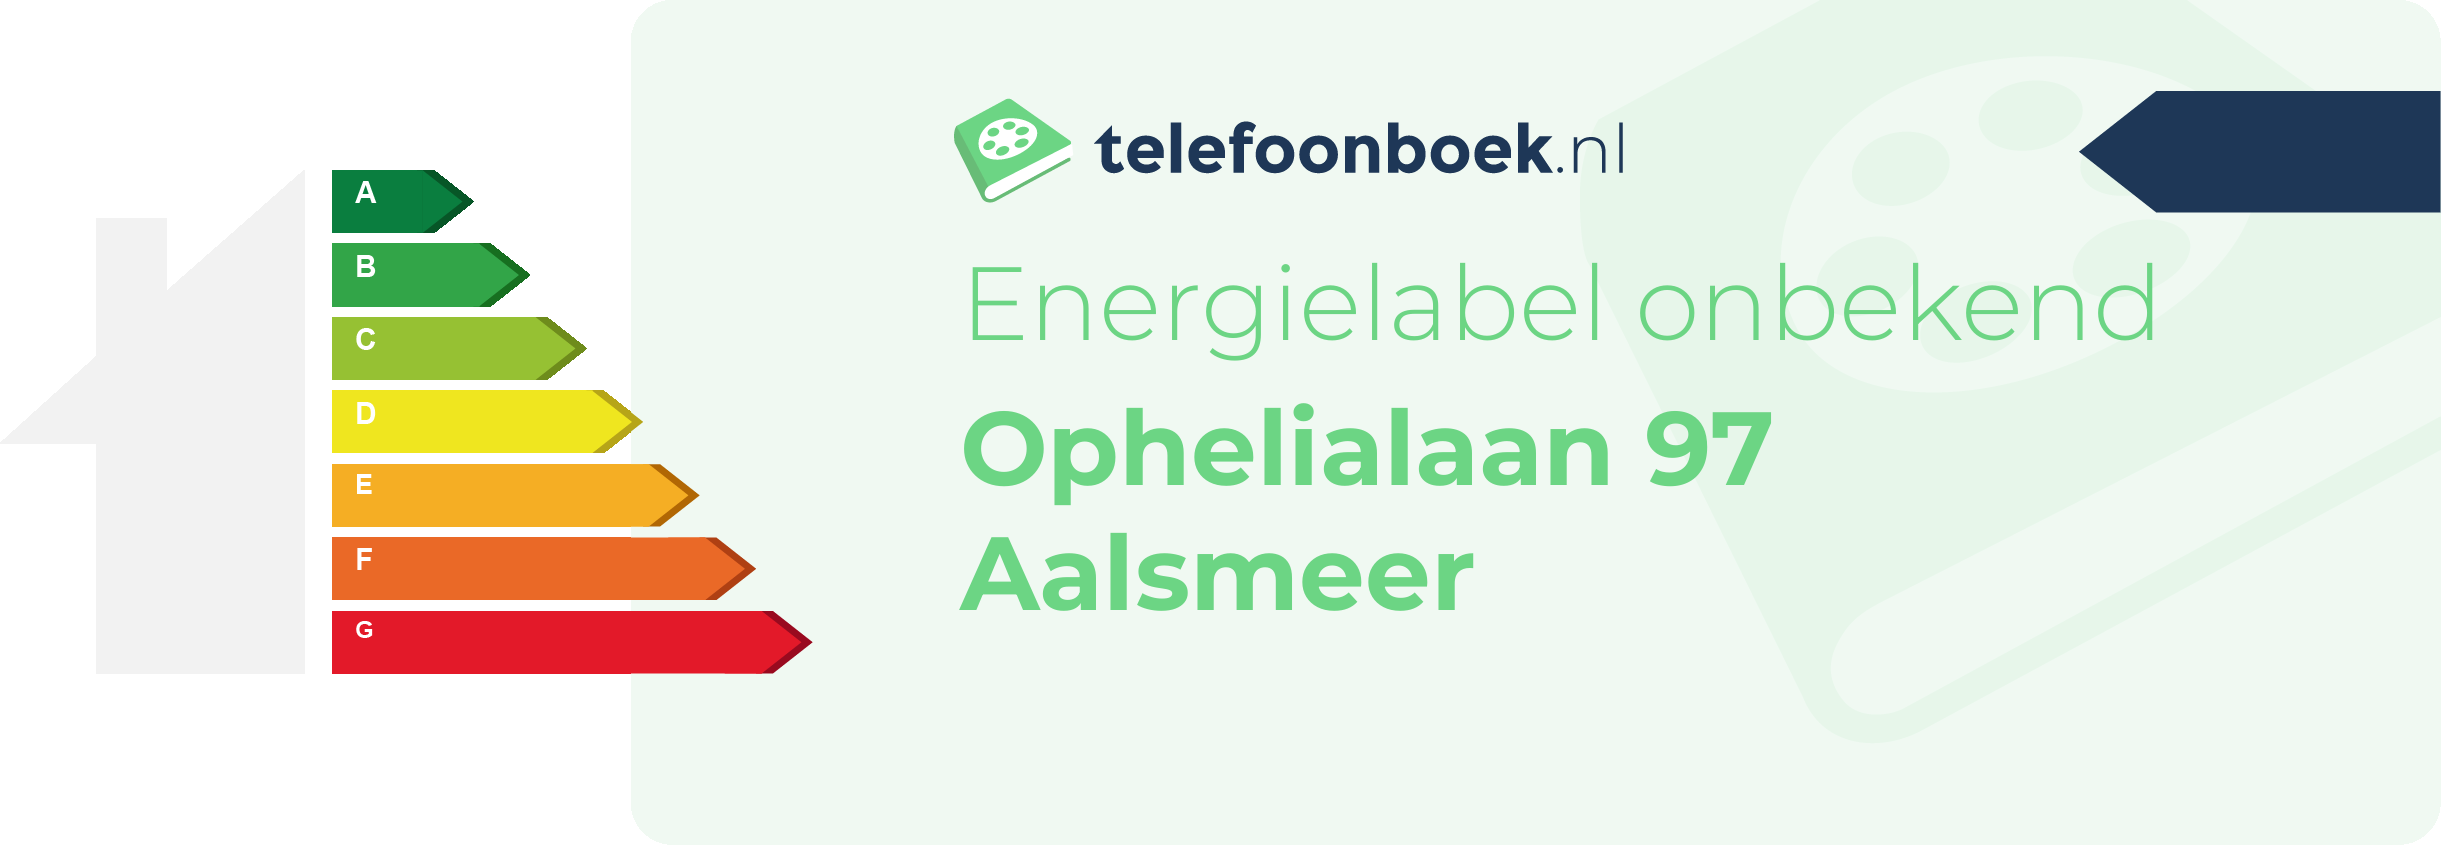 Energielabel Ophelialaan 97 Aalsmeer